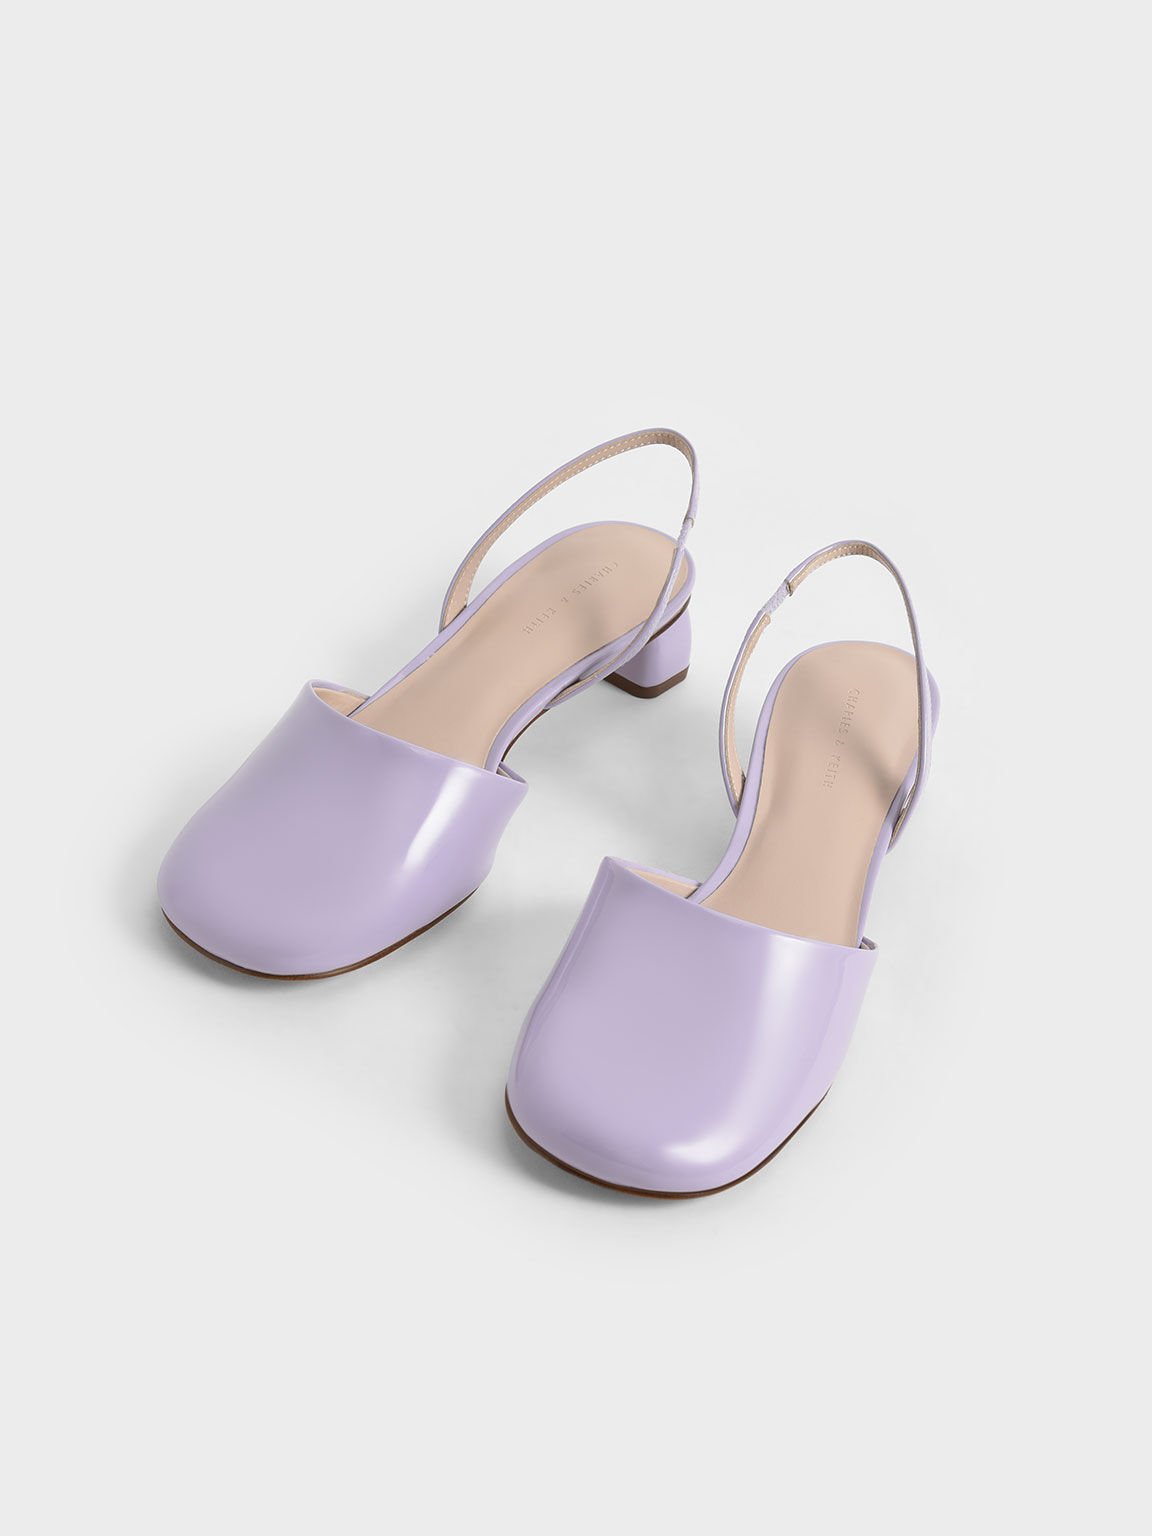 復古圓頭粗跟鞋, 紫丁香色, hi-res